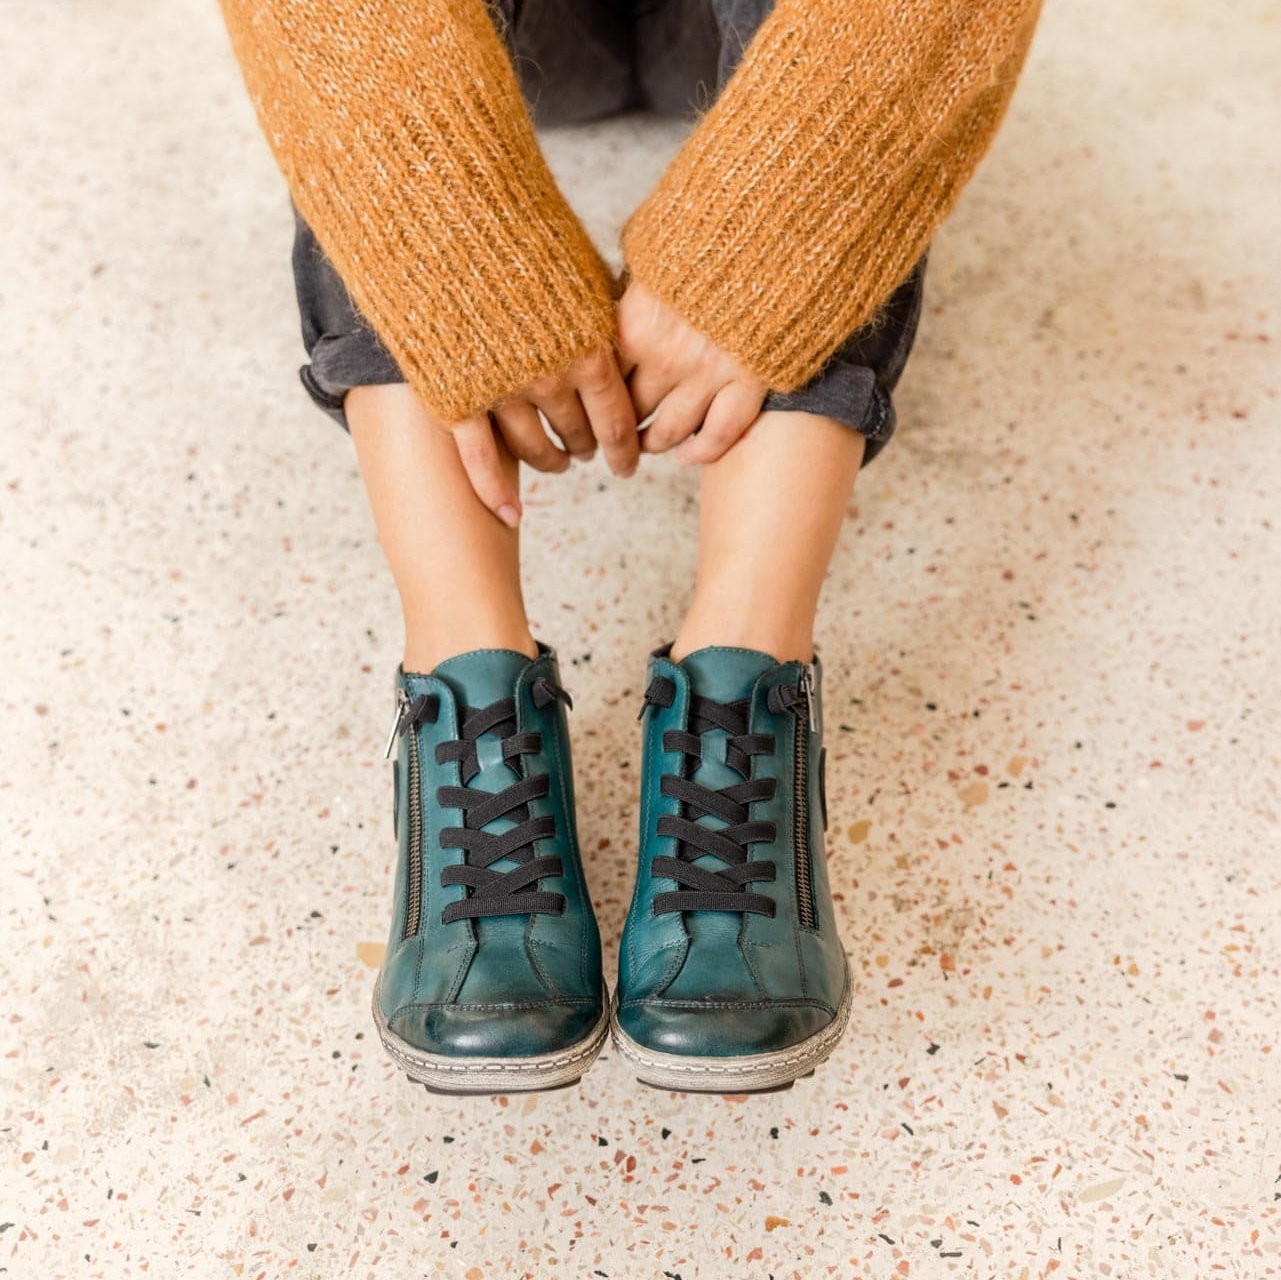 Blaue Schnürschuhe leicht wärmend aus Glattleder mit Reißverschluss und Schnürung und Wechselfußbett. Passend zu den Schuhen trägt die Frau einen ockerfarbenen Pullover und eine dunkle Jeans.